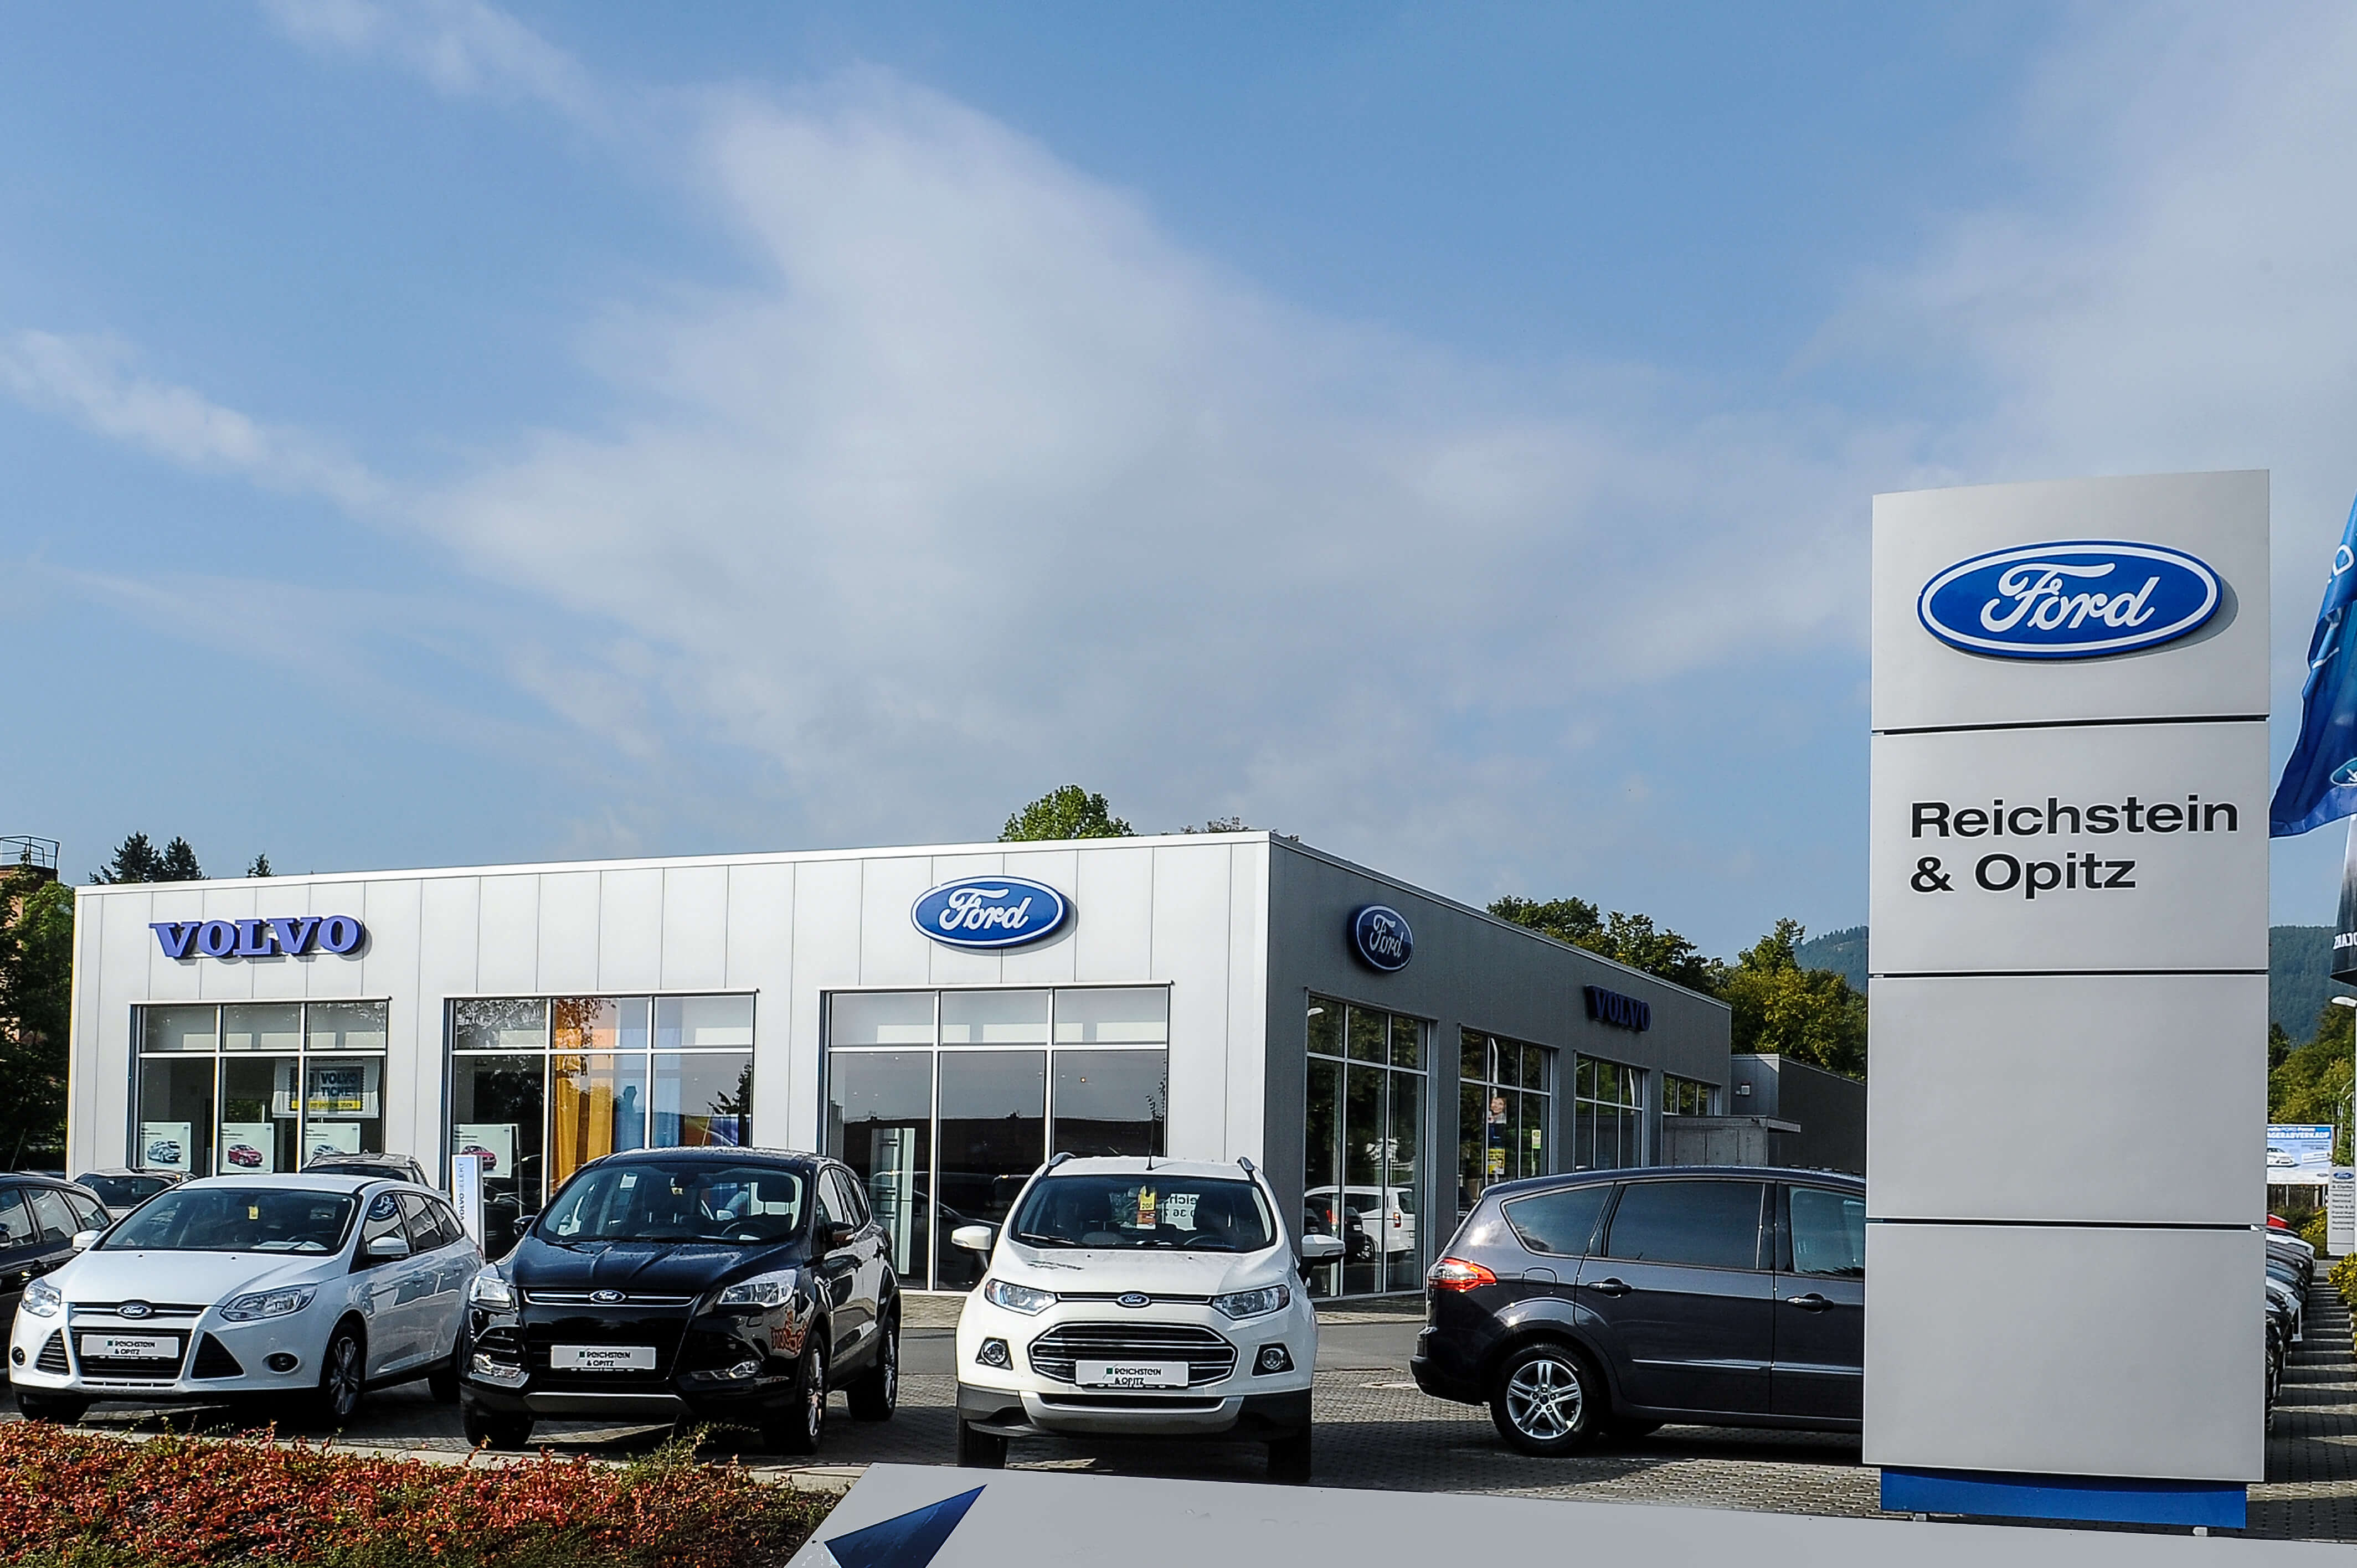 Reichstein & Opitz | Eröffnung der Filiale Saalfeld mit Ford & Volvo